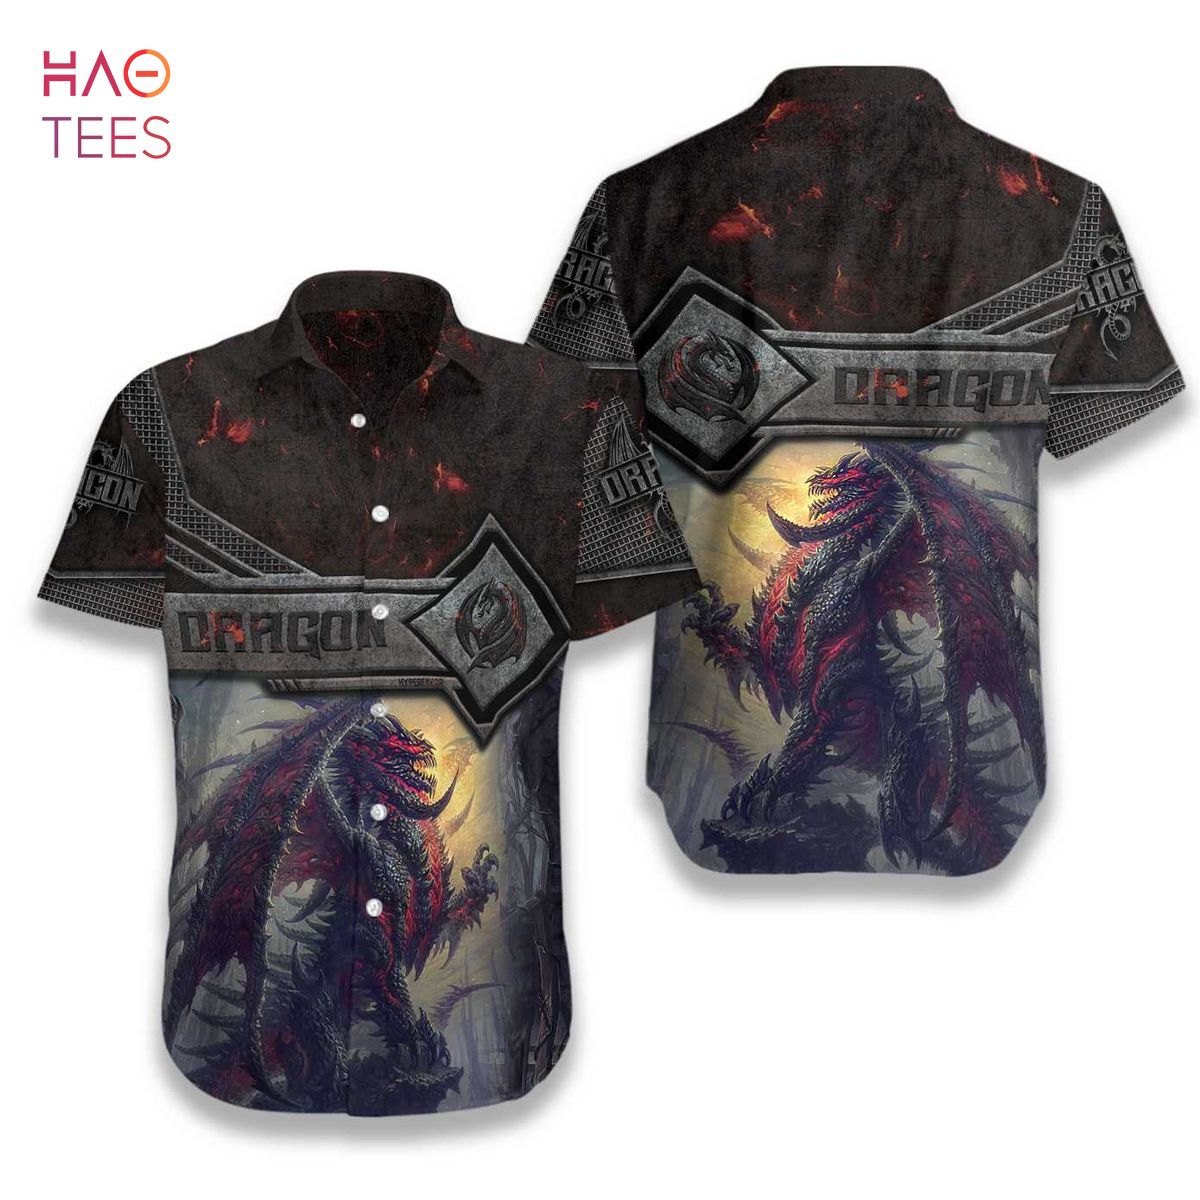 Mighty Dragon Steel Armor Hawaiian Shirt